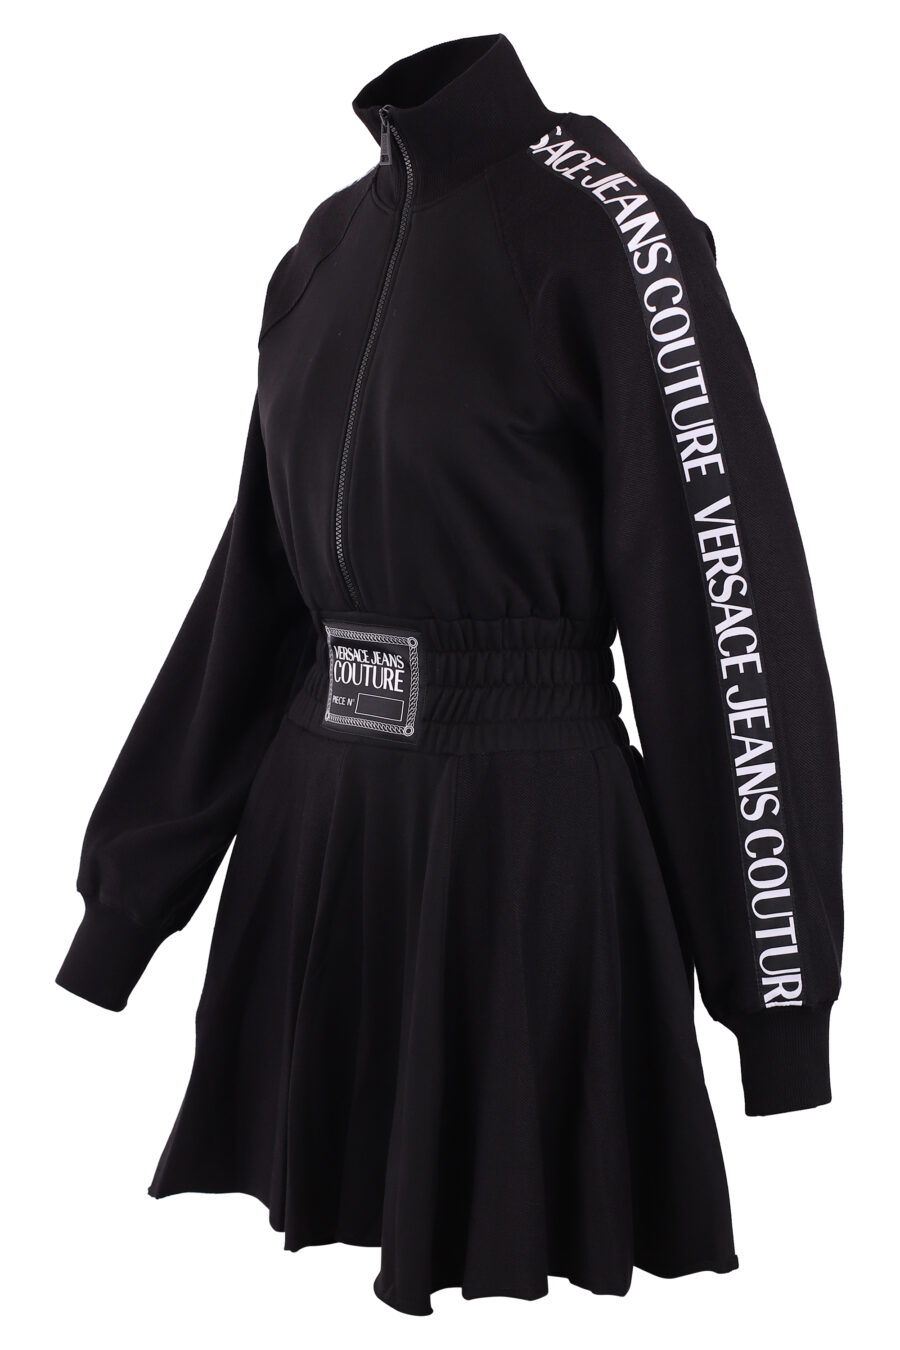 Vestido negro manga larga con logo en tiras - IMG 6195